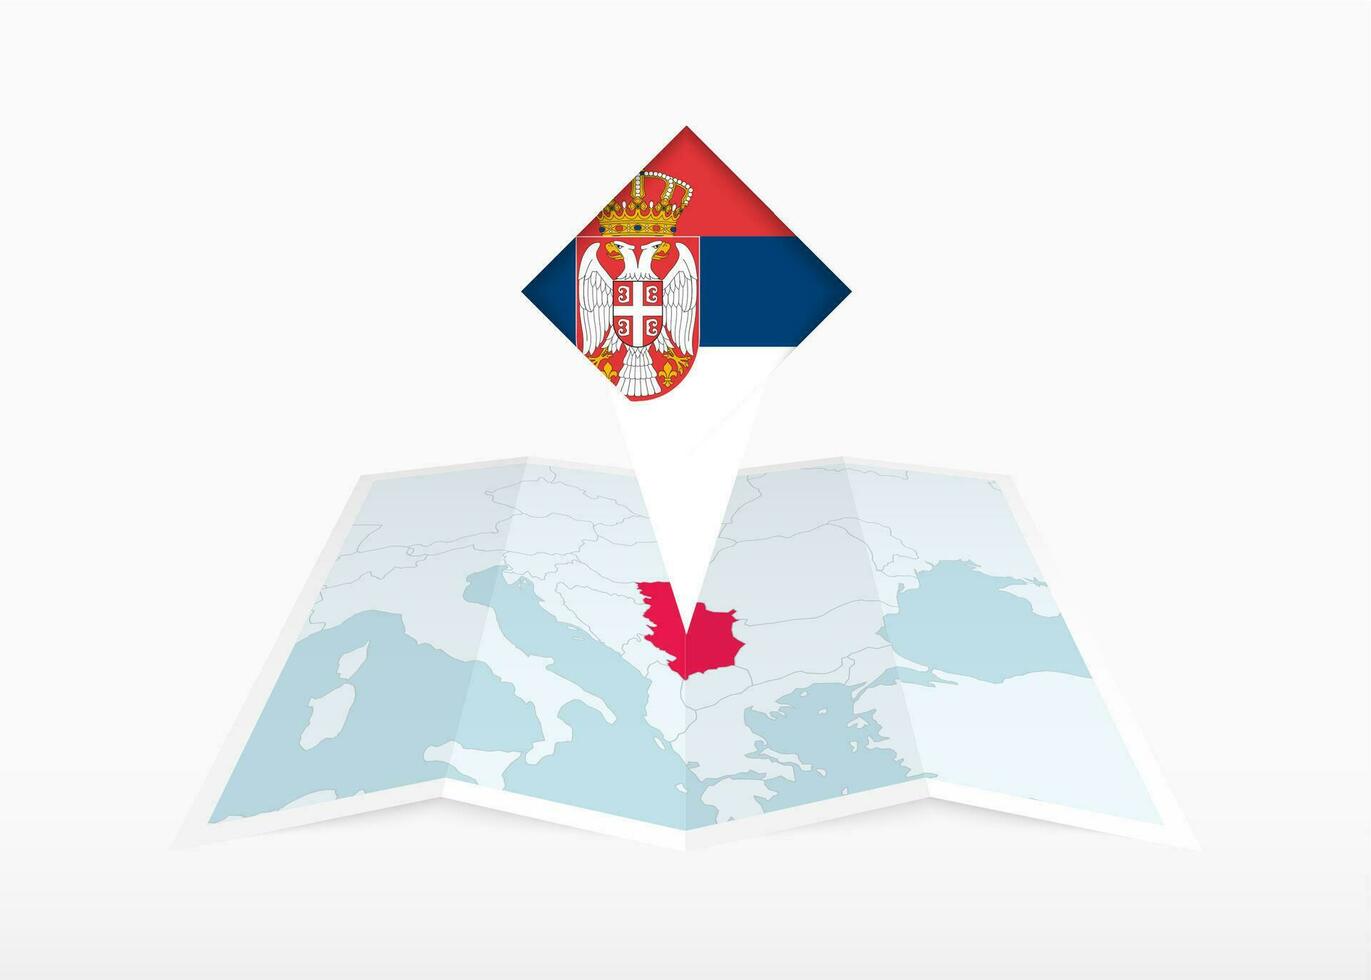 Serbien ist abgebildet auf ein gefaltet Papier Karte und festgesteckt Ort Marker mit Flagge von Serbien. vektor